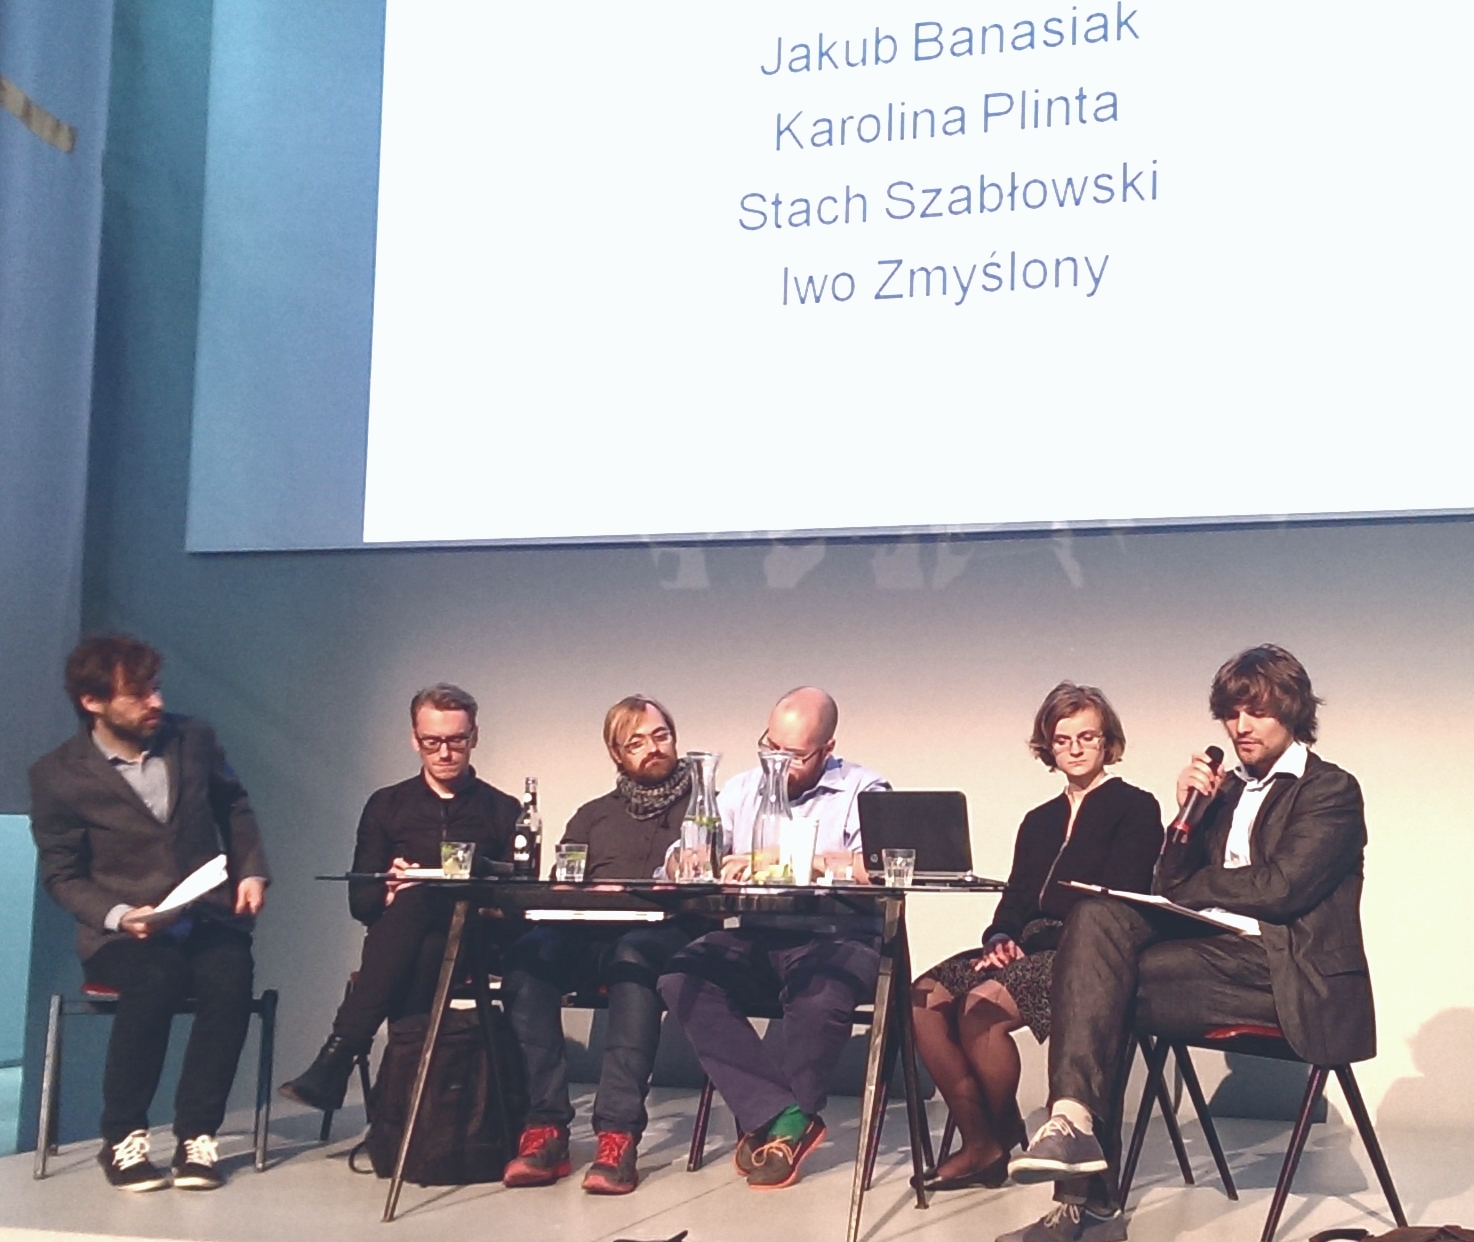 Sesja w MSNie, panel "Zwrot konserwatywny", od prawej: Sebastian Cichocki, Łukasz Ronduda, Stach Szabłowski, Jakub Banasiak, Karolina Plinta, Iwo Zmyślony